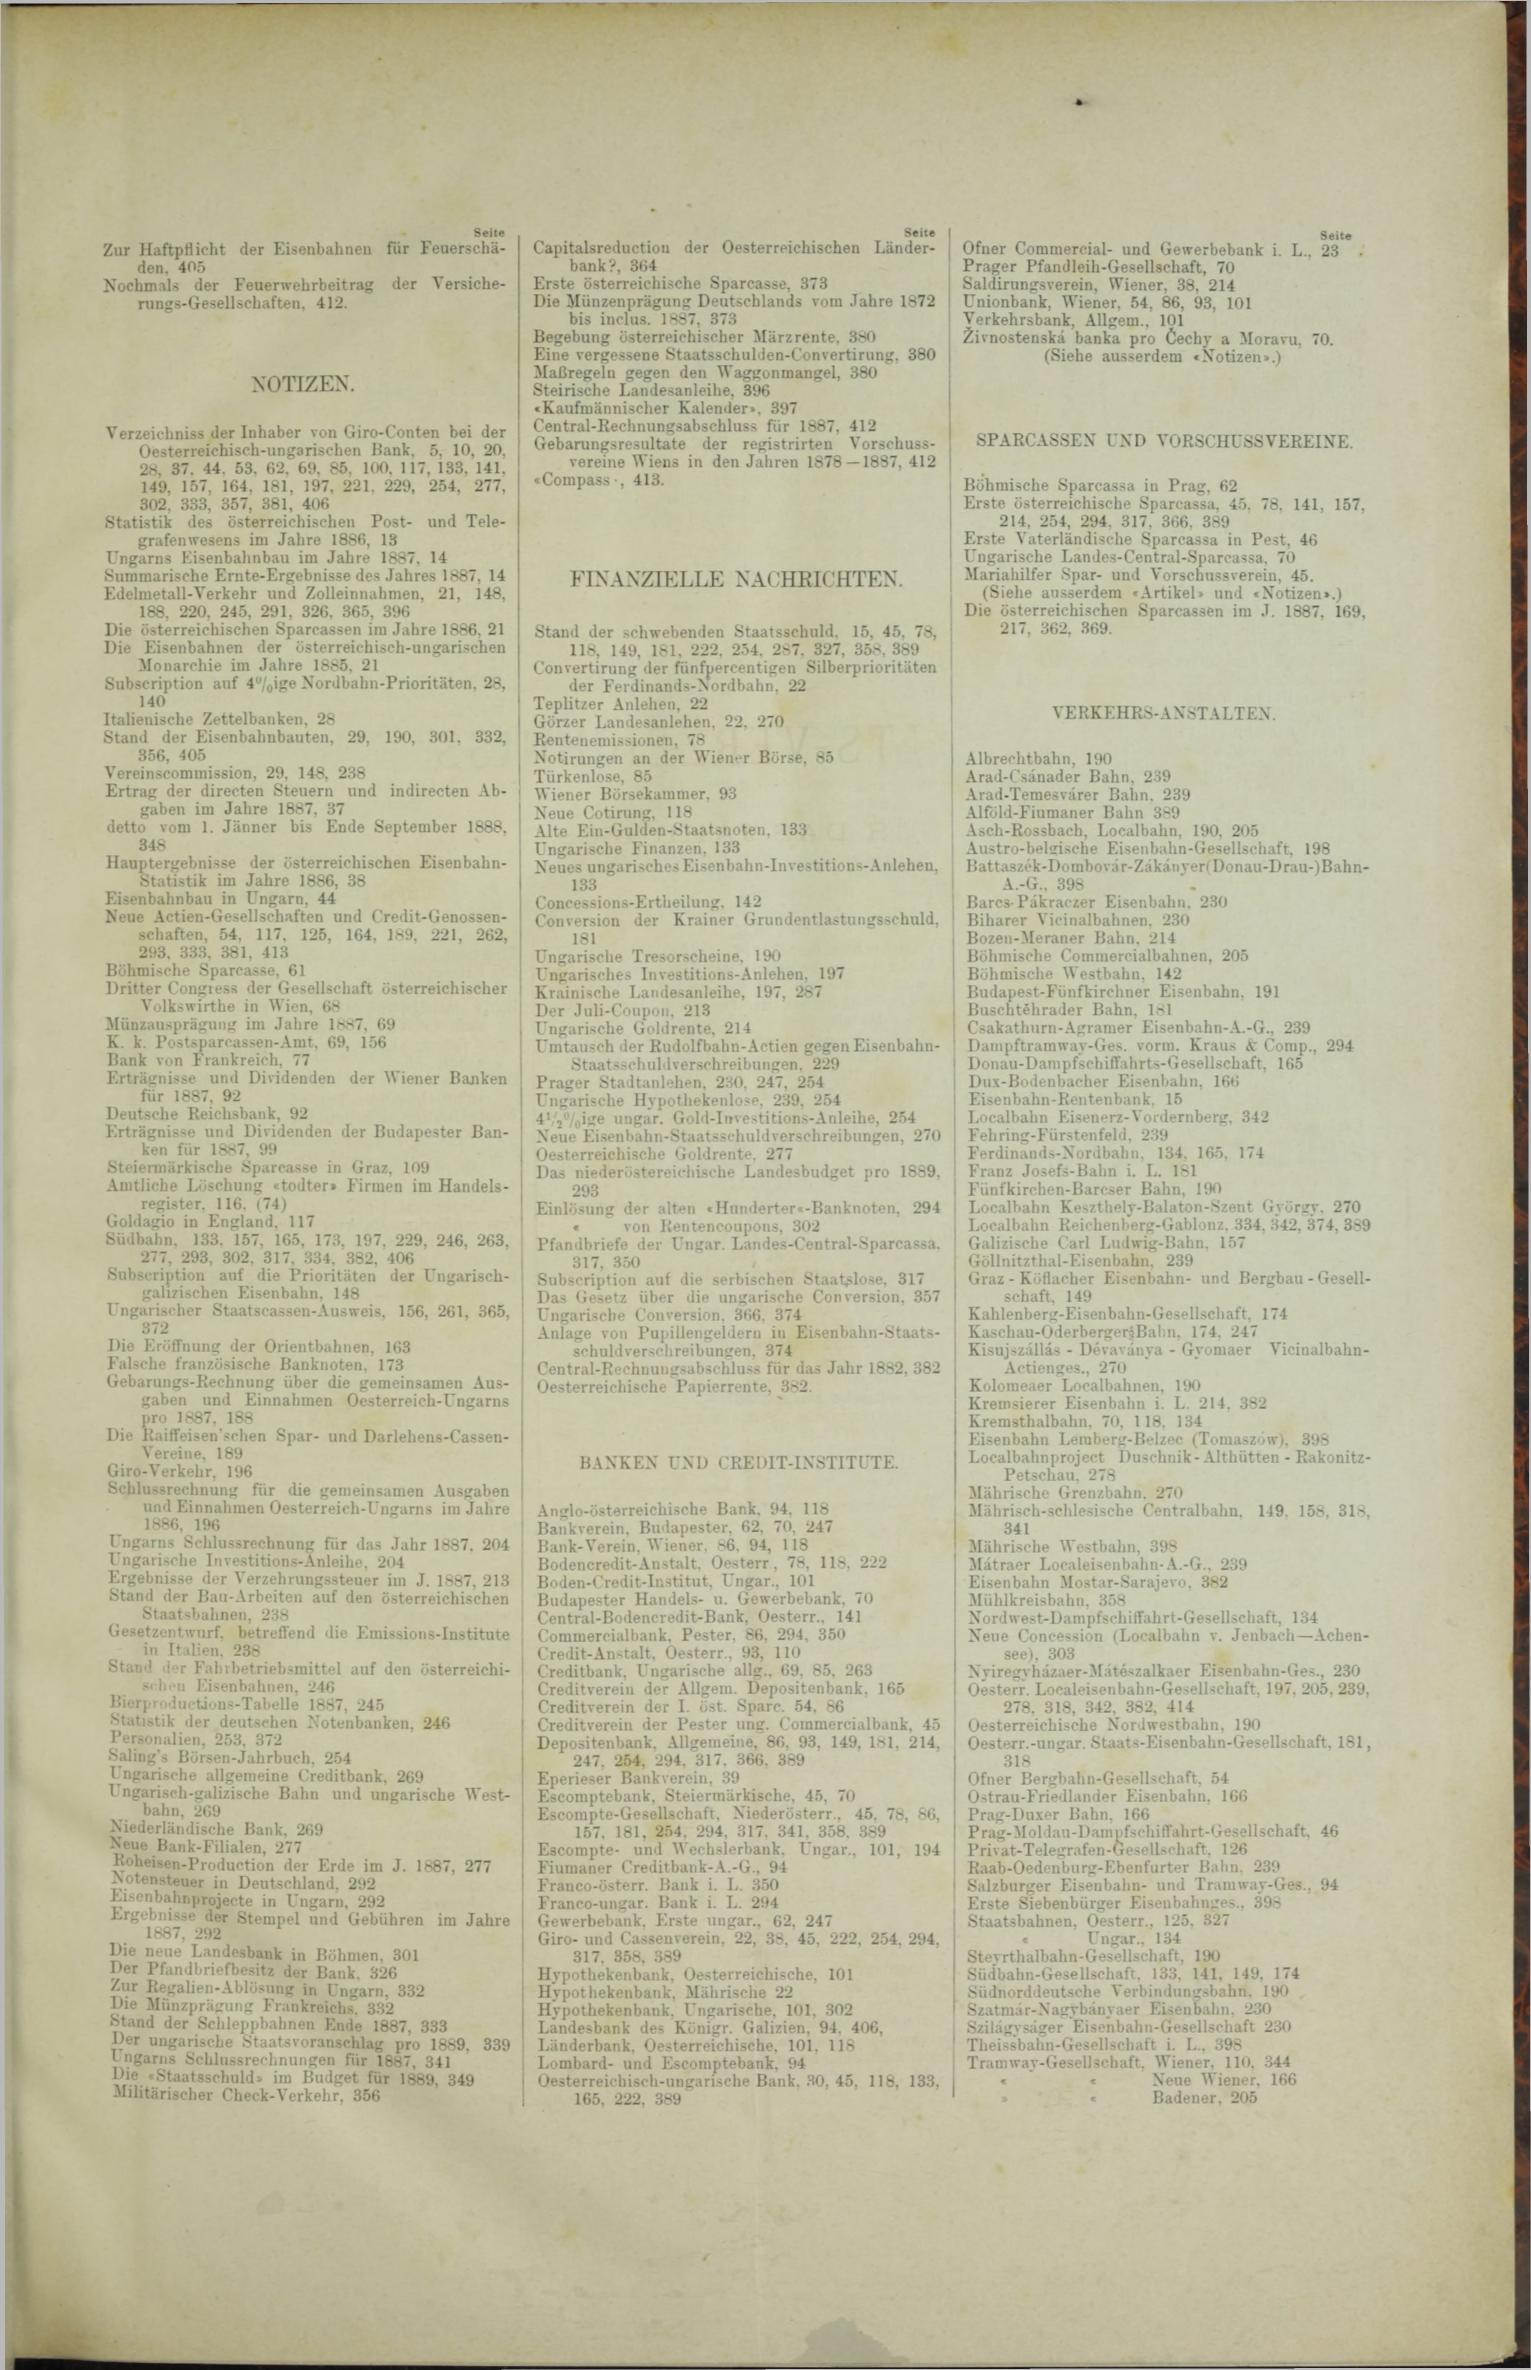 Der Tresor 20.12.1888 - Seite 11